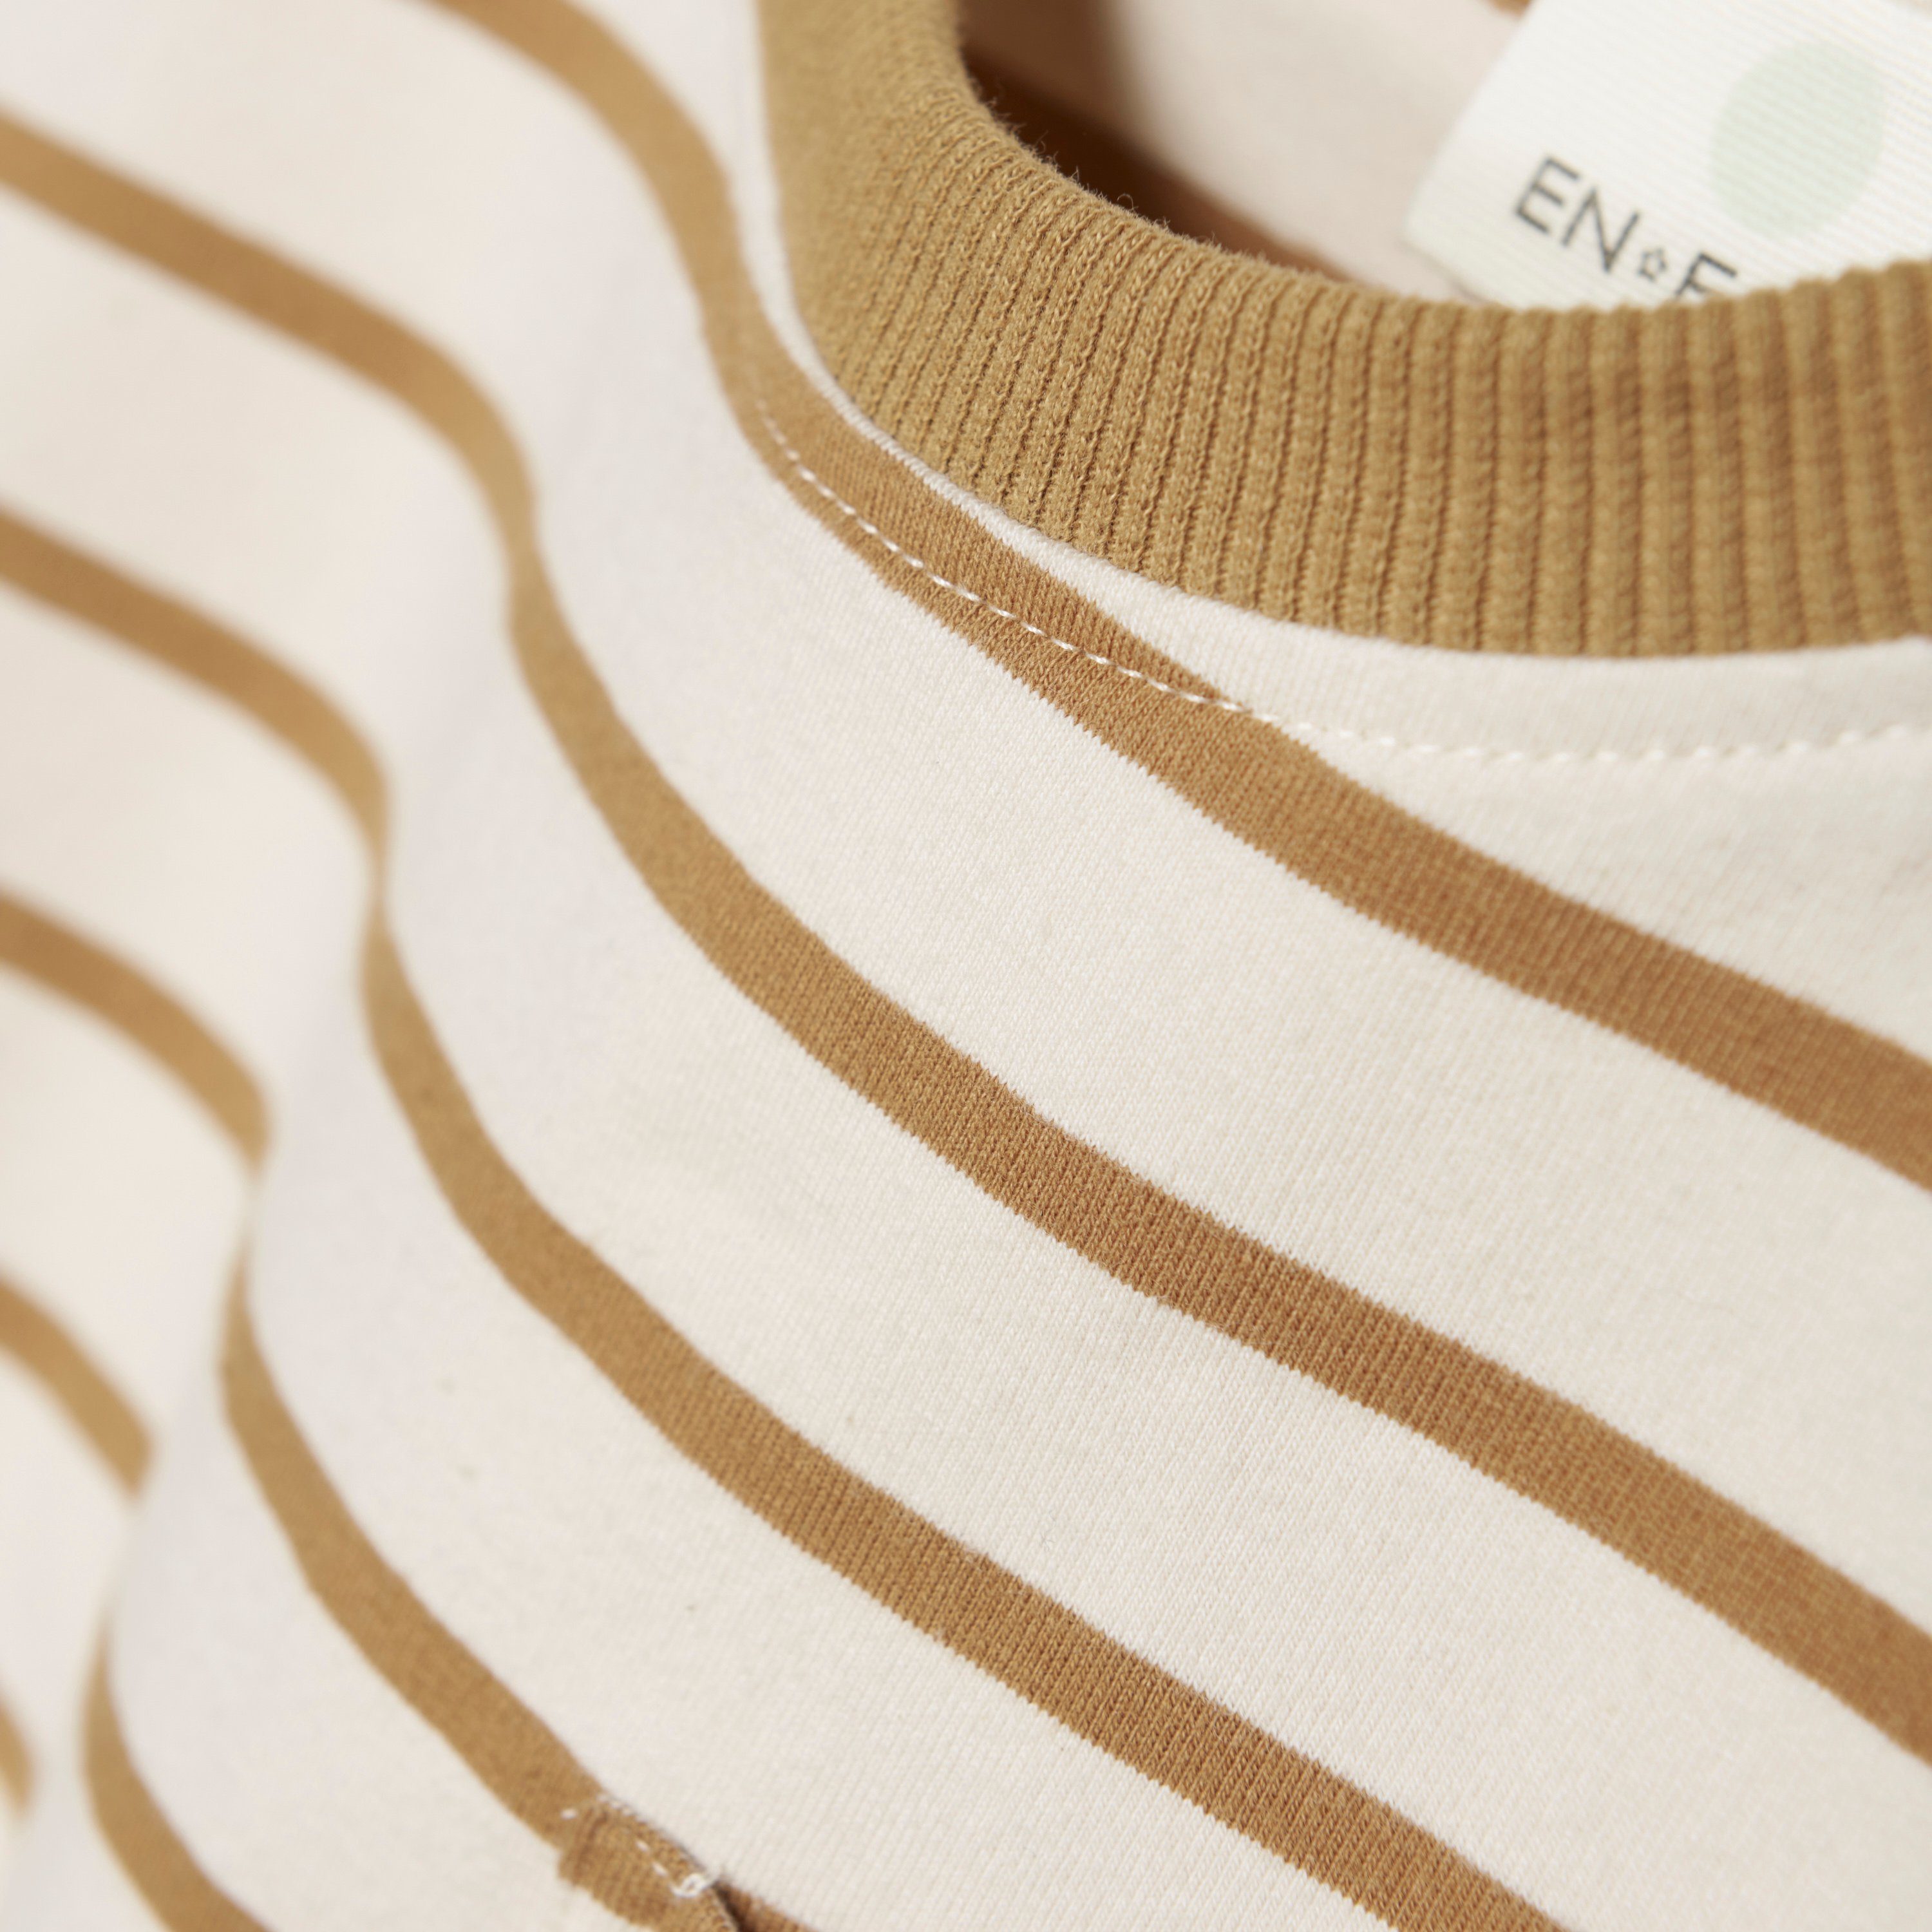 Streifen - EN LS Langarmshirt (2015) ENT-Shirt FANT mit 230341 Stripe Sandshell Langarmshirt